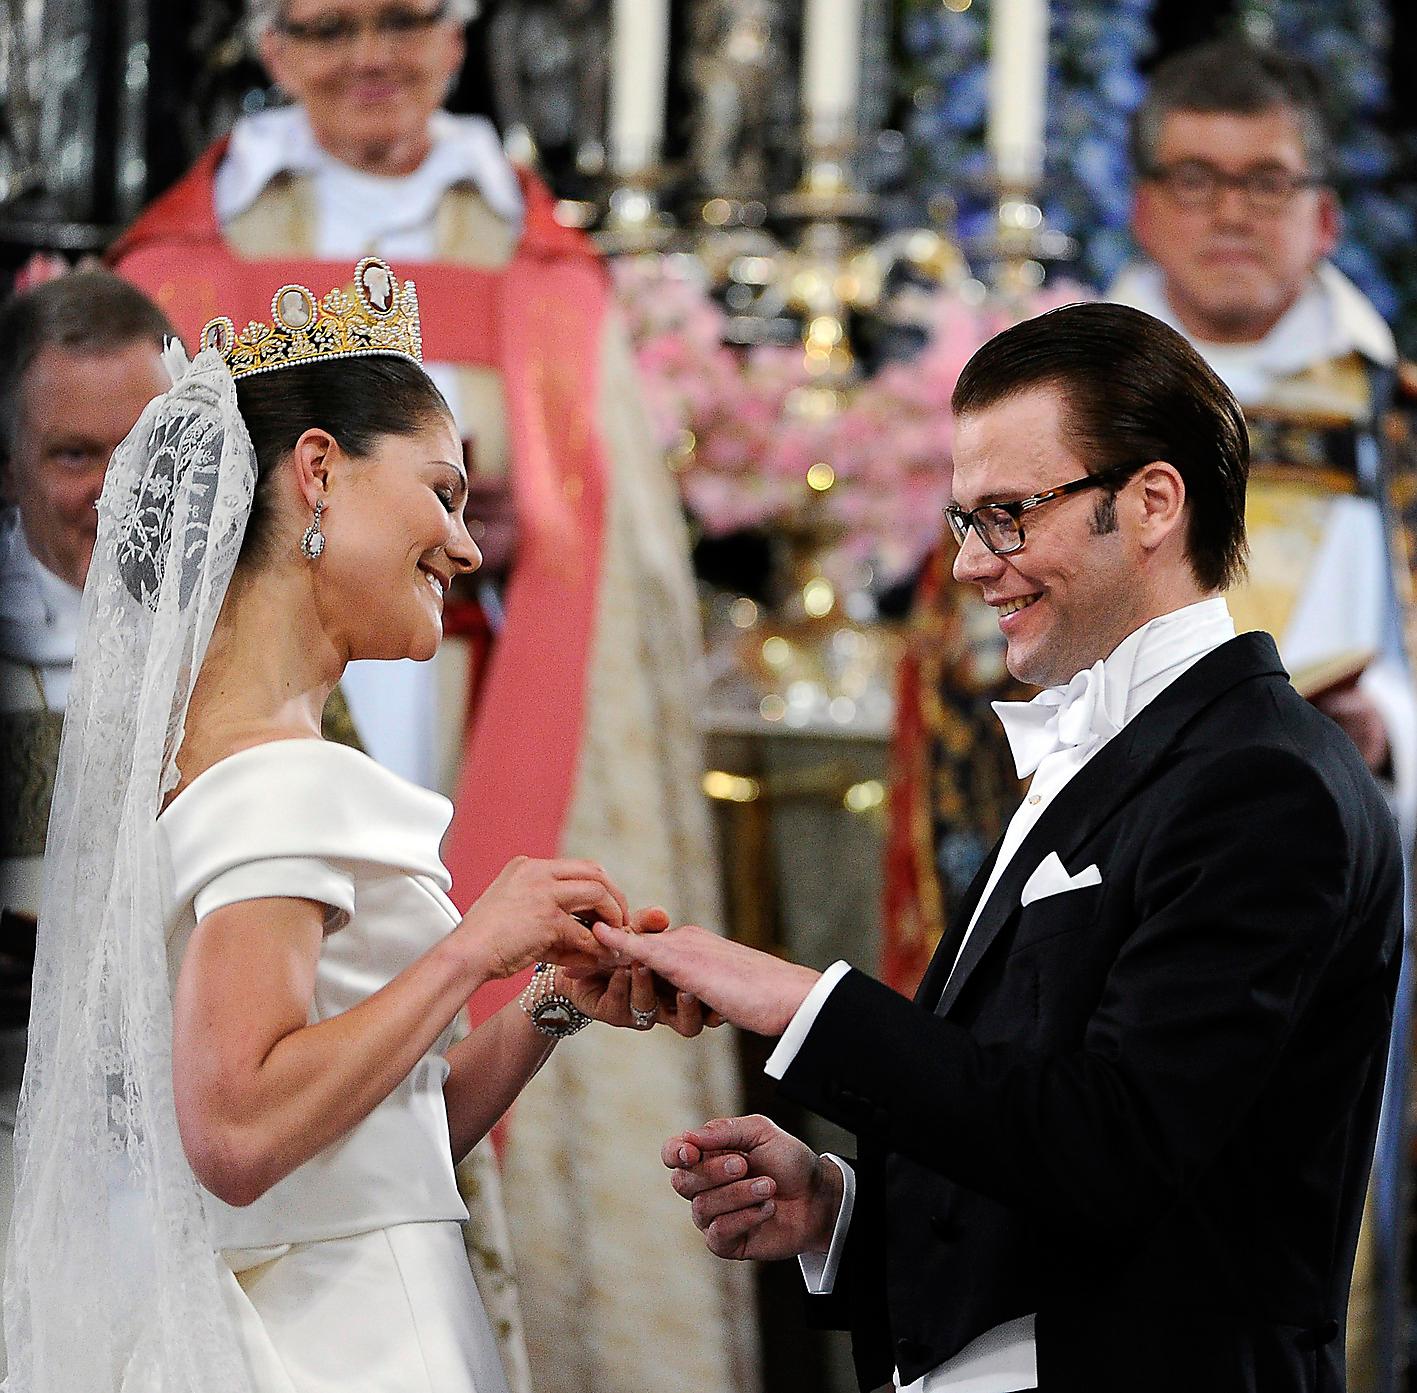 Victoria och Daniel gifte sig i Storkyrkan den 19 juni 2010.